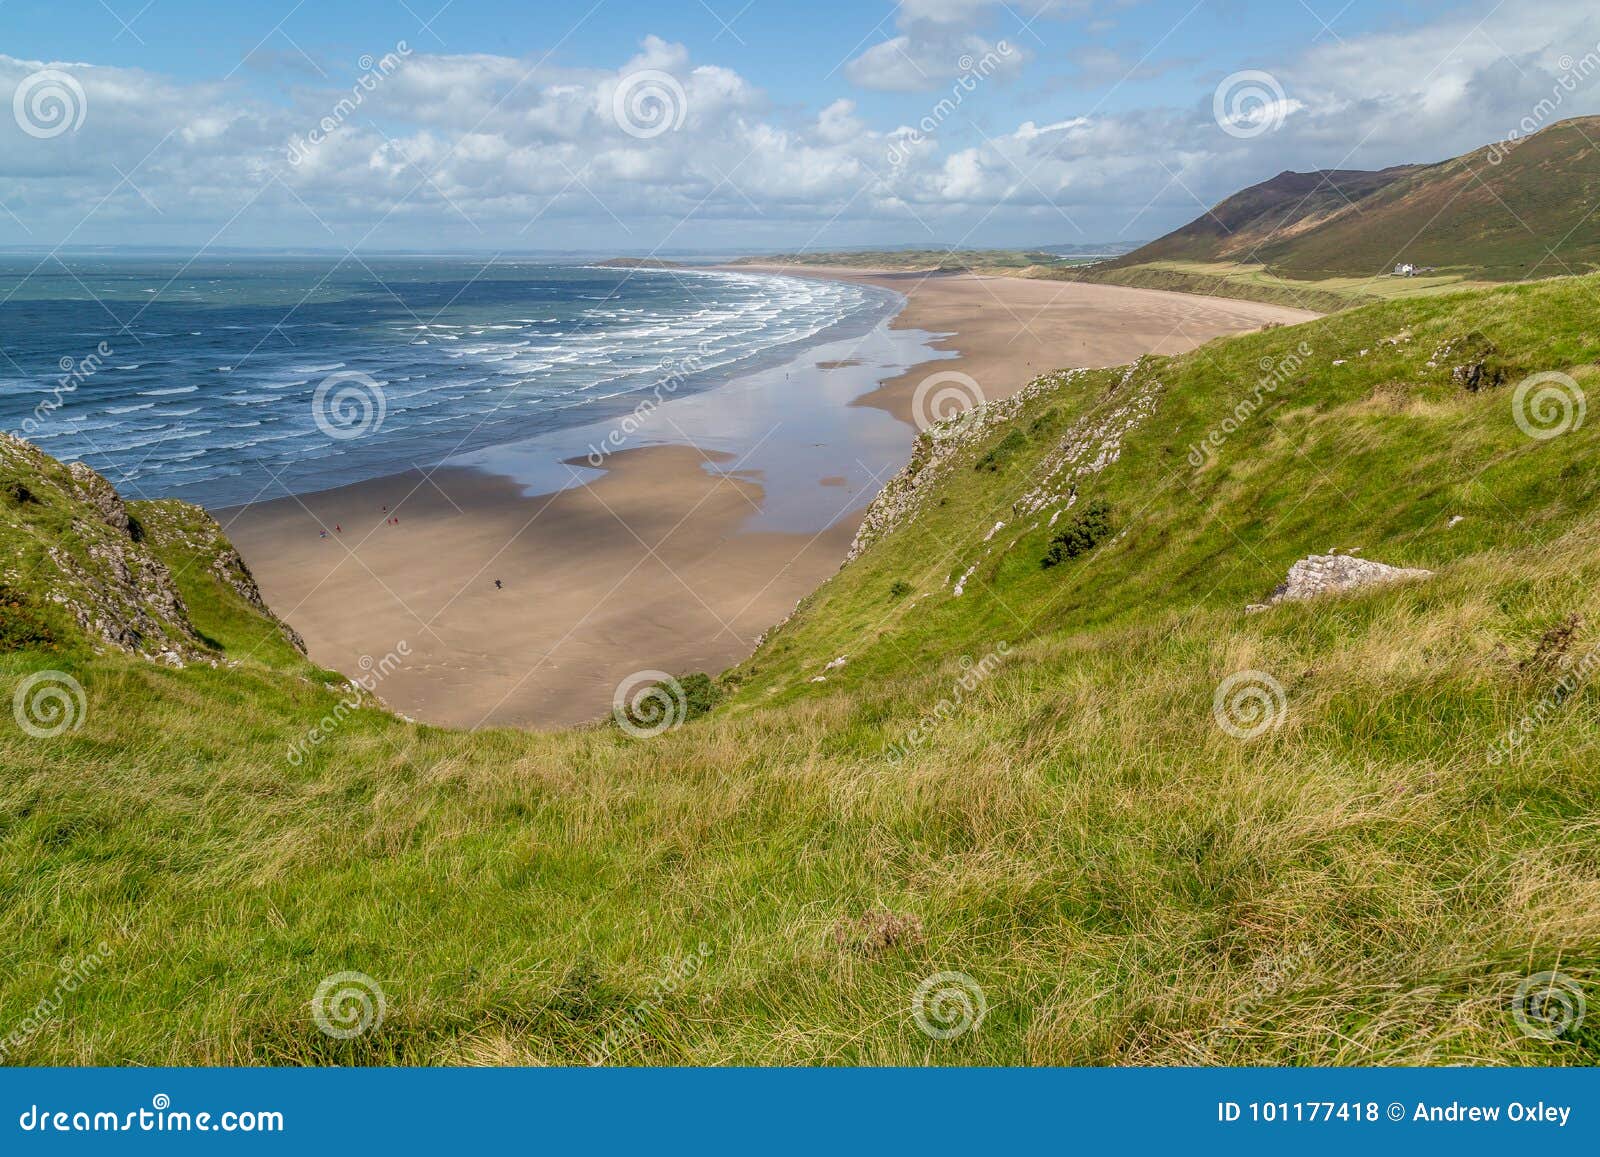 Opinião da baía de Rhossili, Gales do Sul, Reino Unido. Uma opinião da paisagem da baía de Rhossili, em Gower Peninsula, Swansea, Gales do Sul, Reino Unido